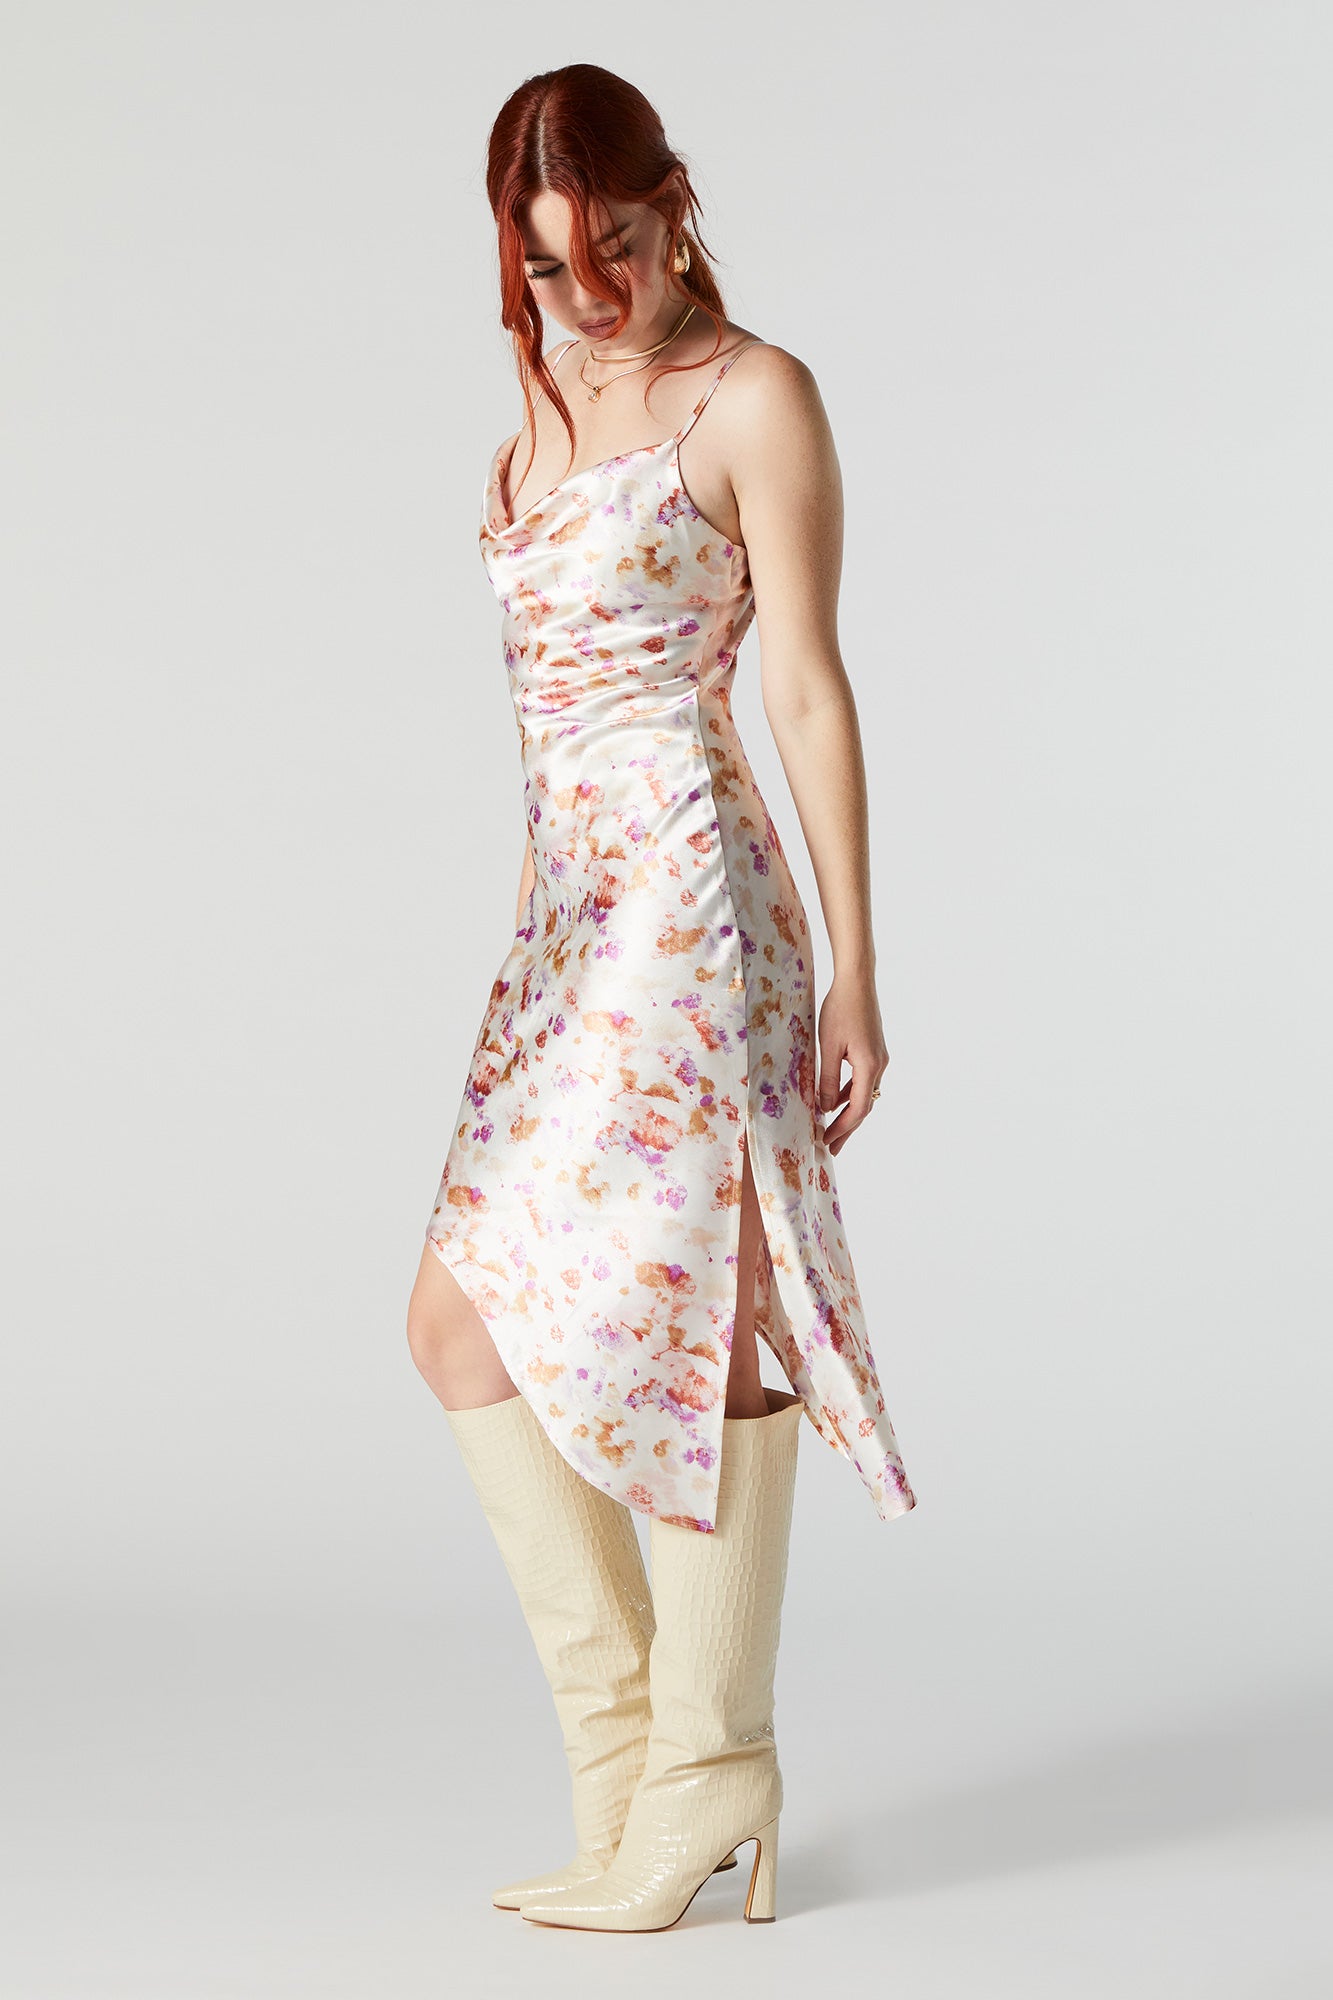 Women's Midi Slip Dress - A New Day™ Burgundy XXL